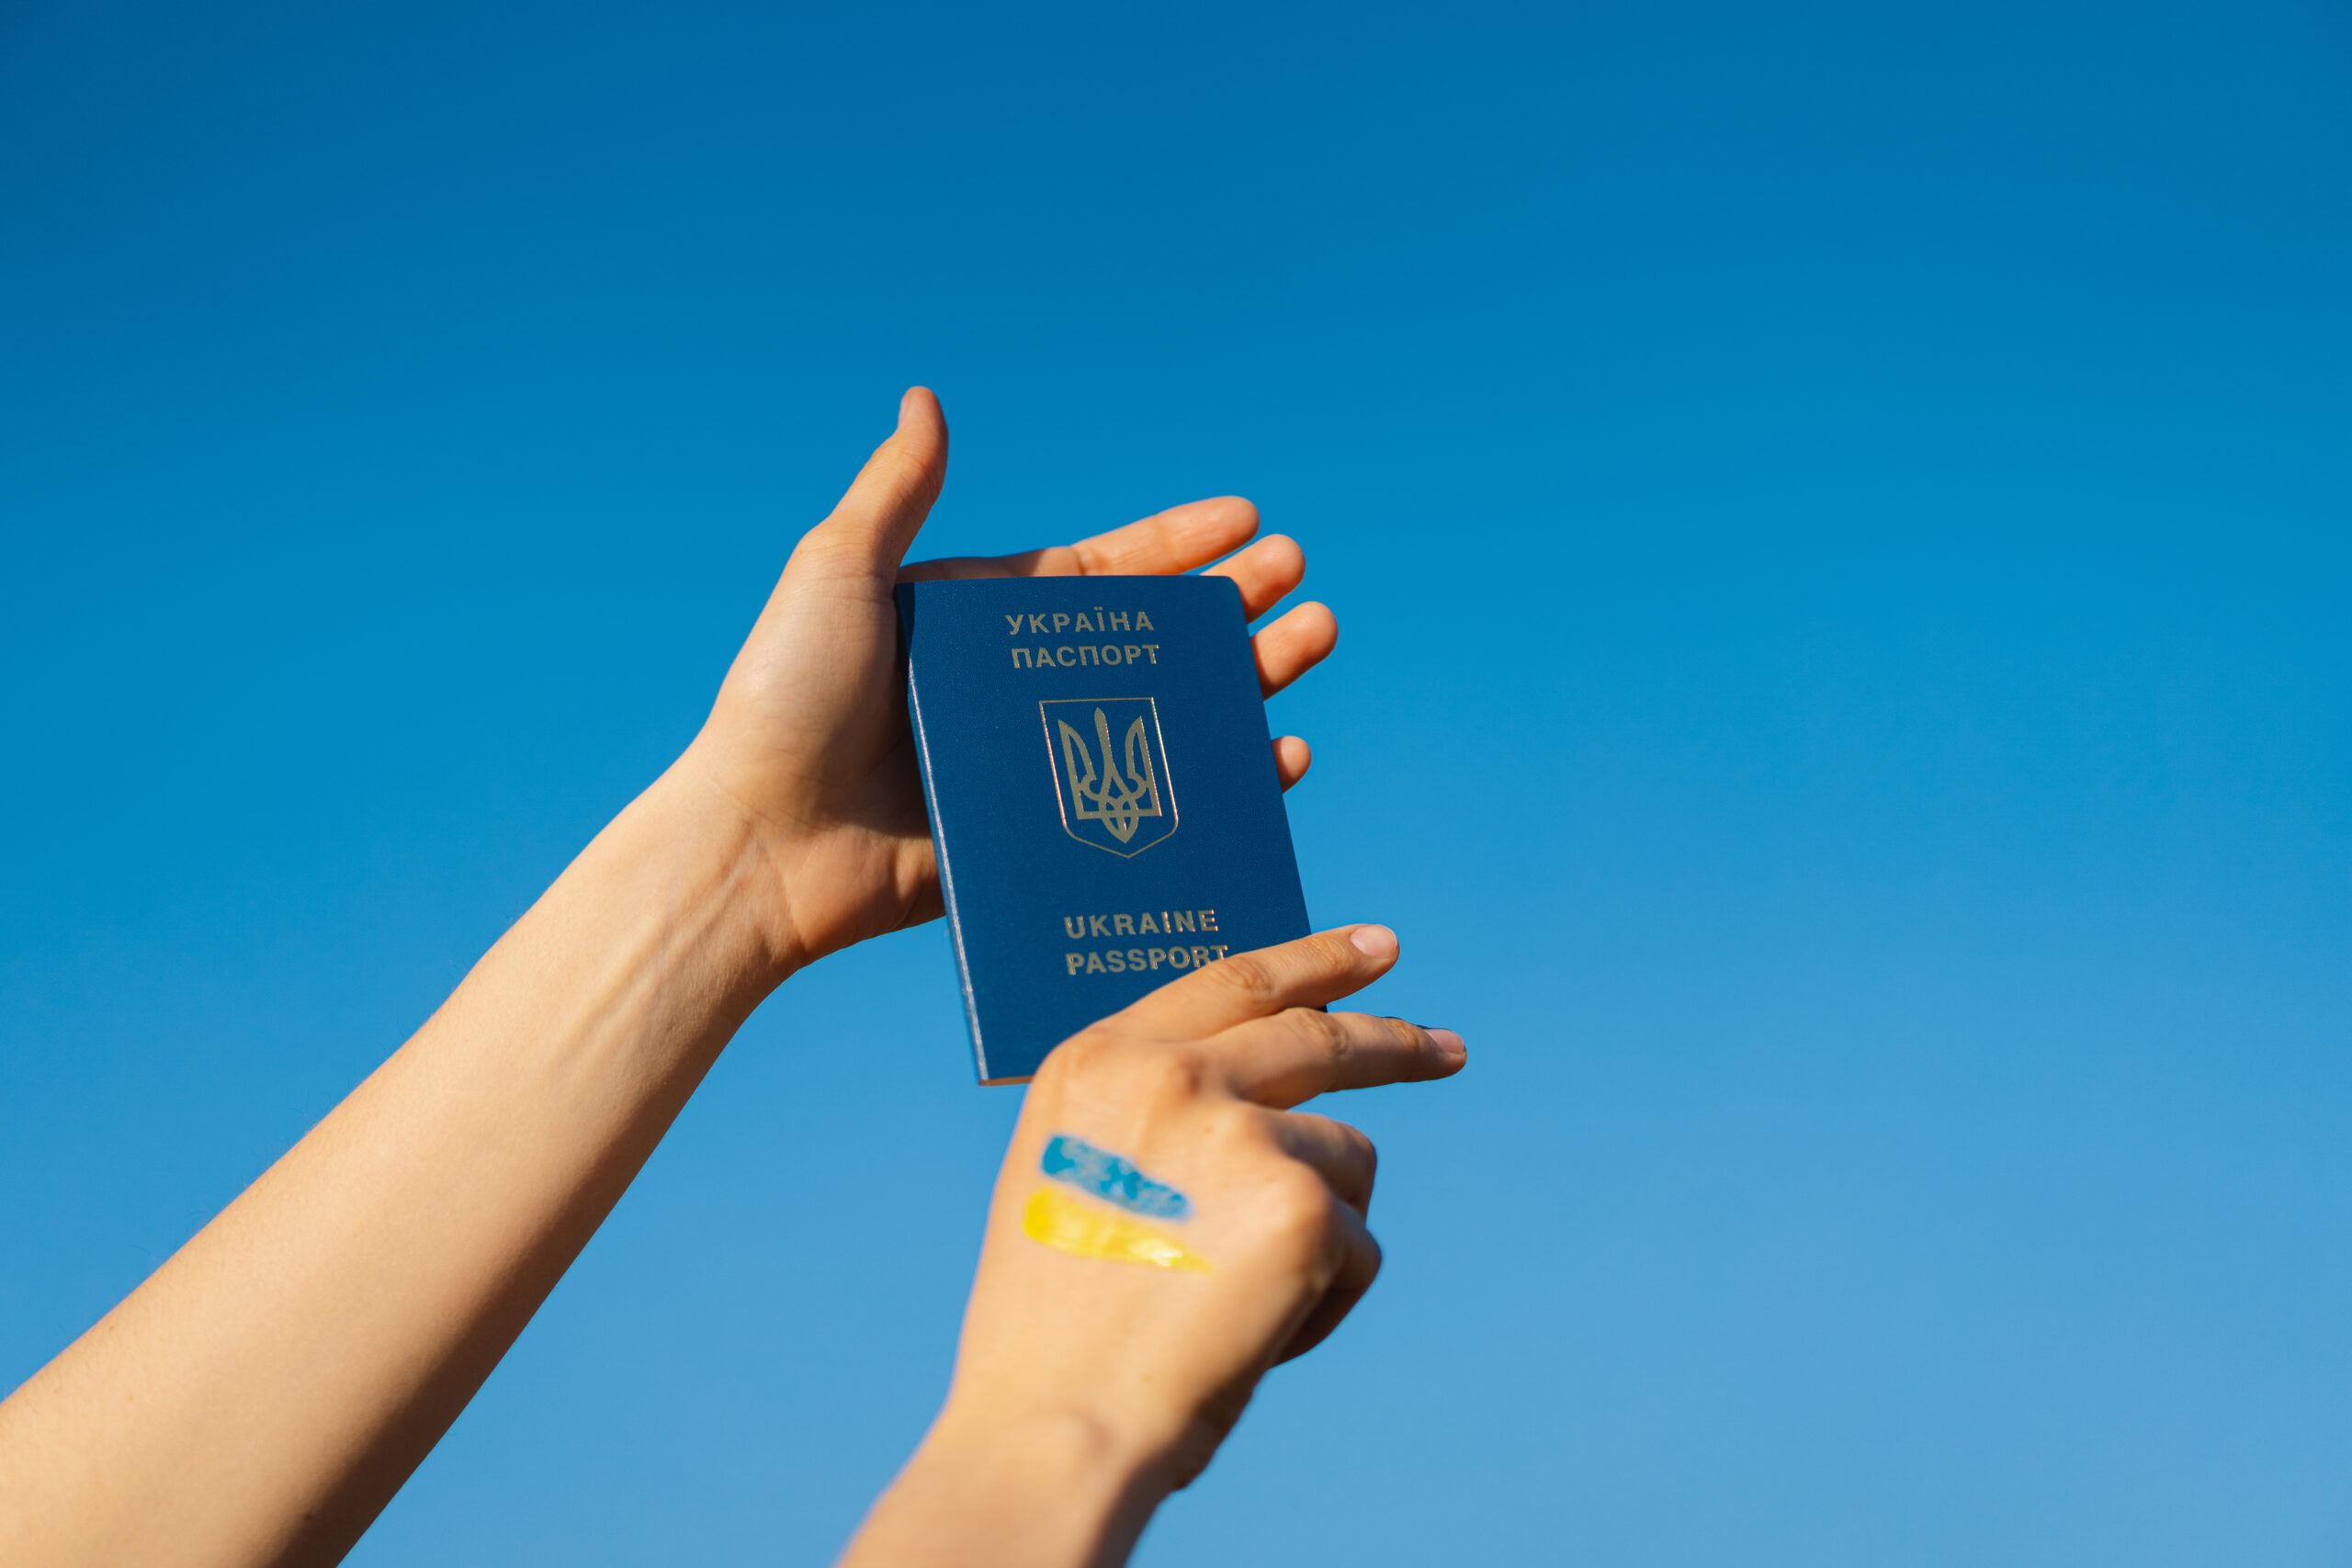 Паспорт Украины стал самым востребованным среди бывших стран СНГ — занимает 36 место в рейтинге 